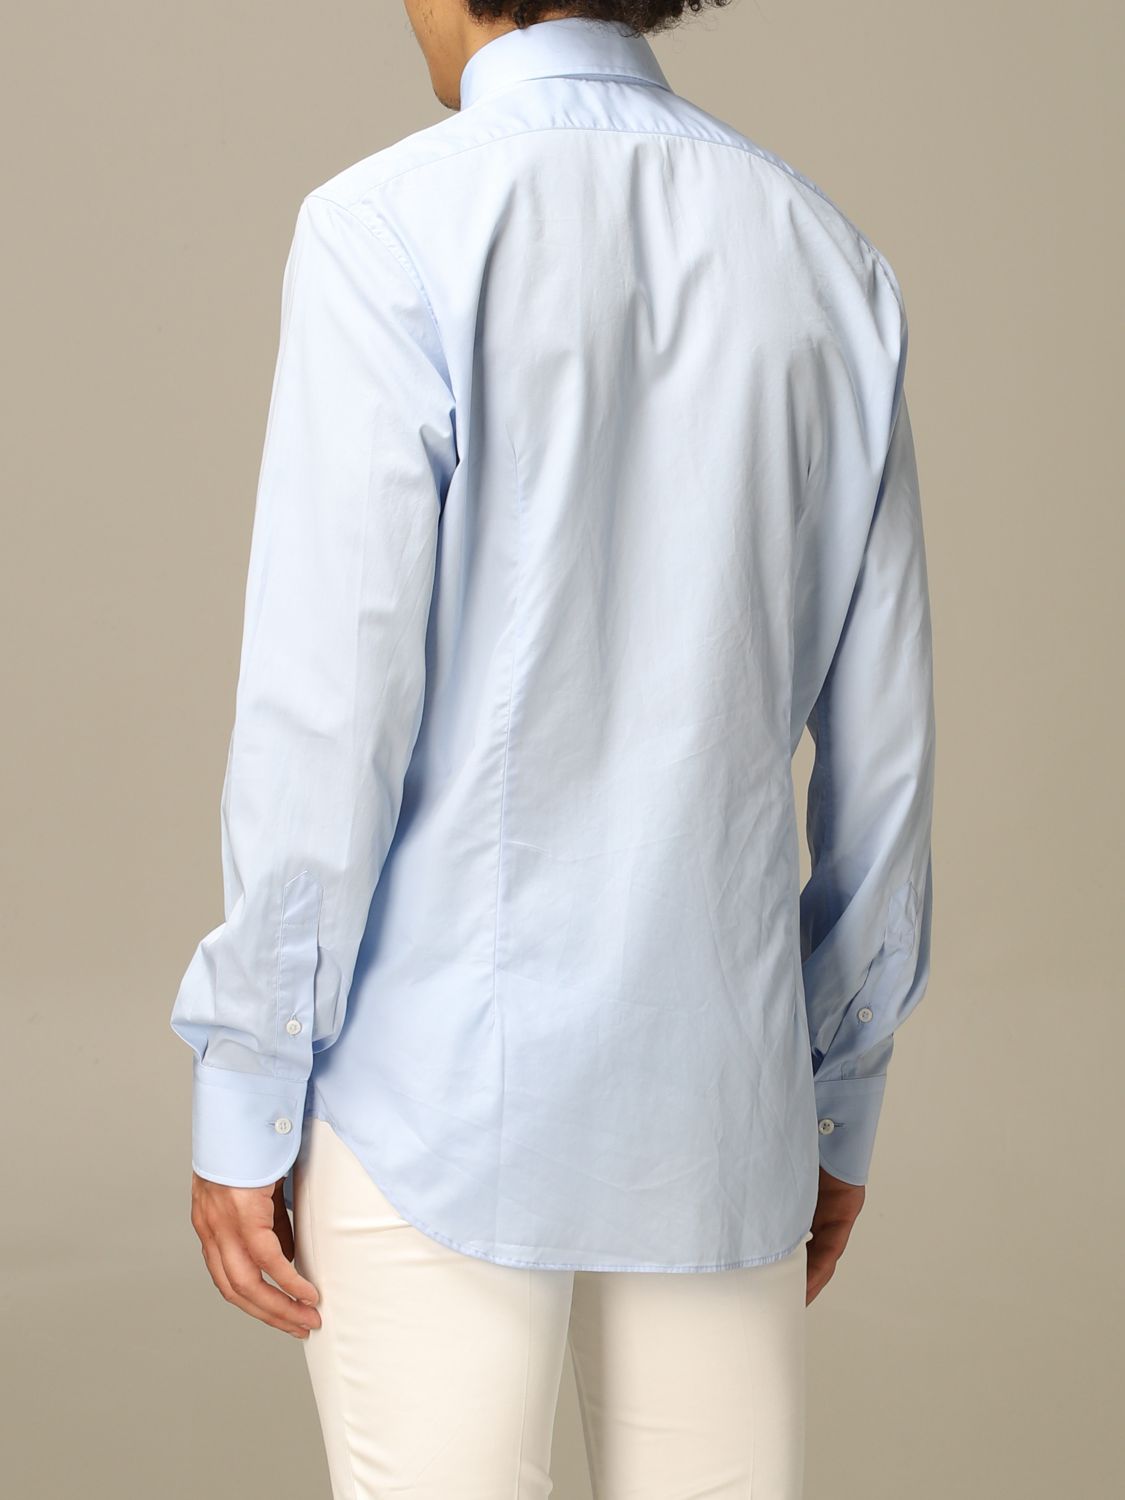 Camicia di cotone con logo G Quadro Giglio.com Abbigliamento Camicie 